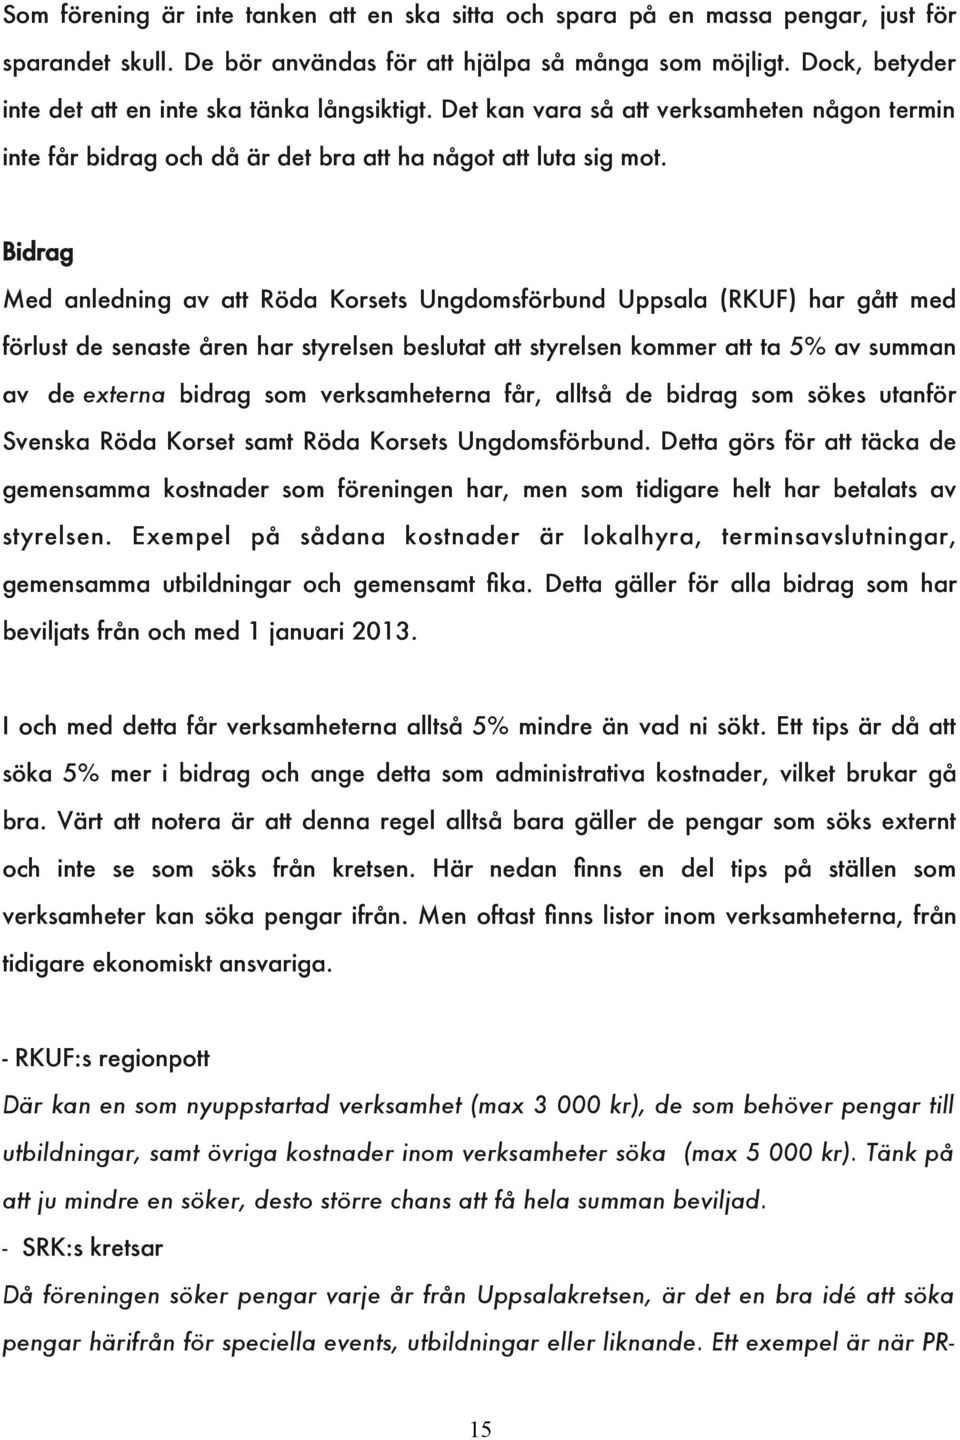 Bidrag Med anledning av att Röda Korsets Ungdomsförbund Uppsala (RKUF) har gått med förlust de senaste åren har styrelsen beslutat att styrelsen kommer att ta 5% av summan av de externa bidrag som